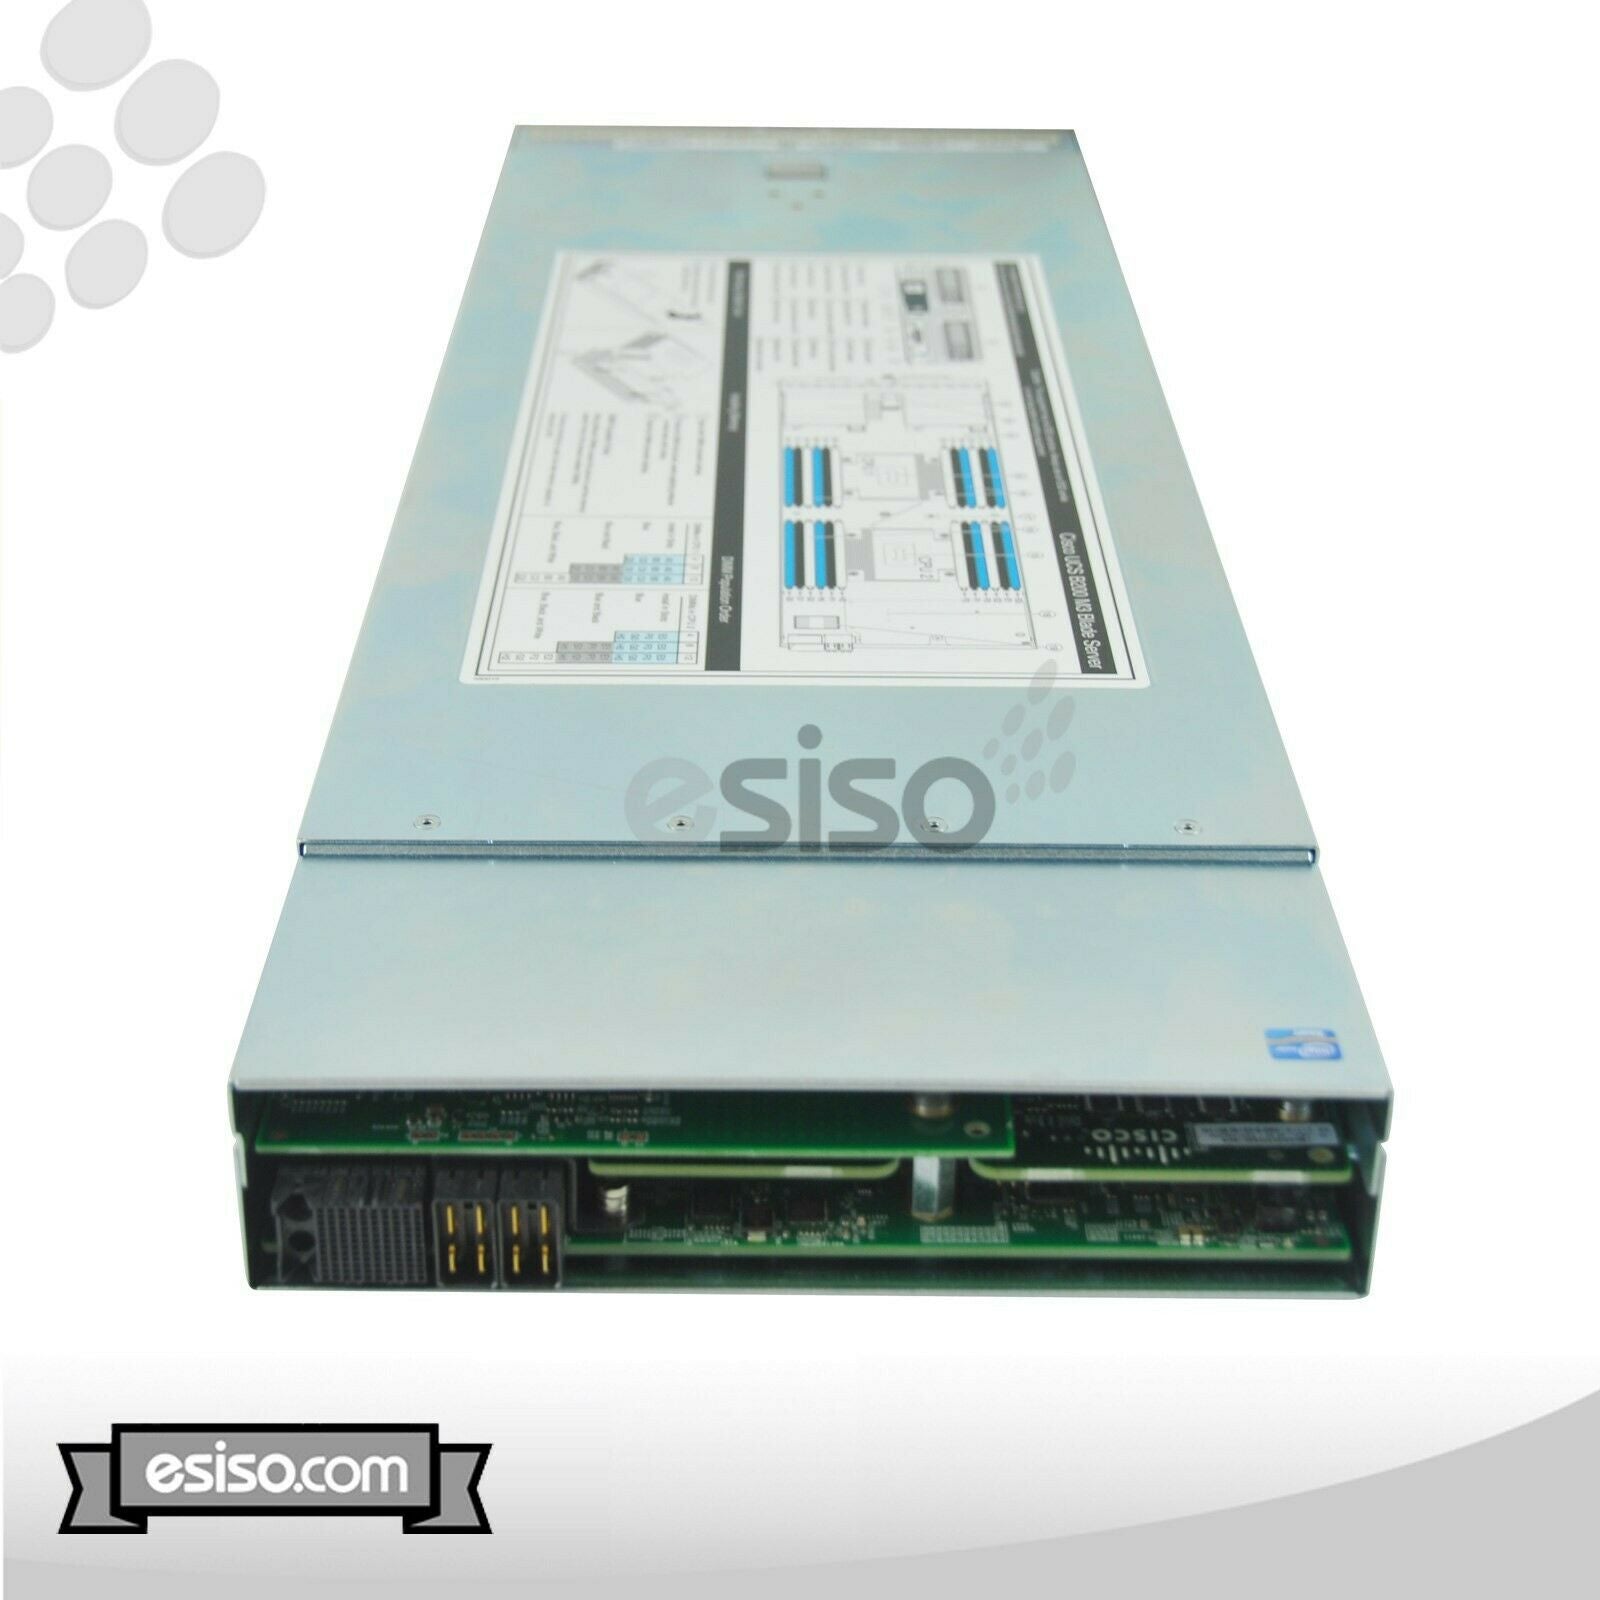 CISCO UCS B200 M3 BLADE 2x EIGHT CORE E5-2690 2.9GHz 64GB RAM 2x 300GB 10K SAS